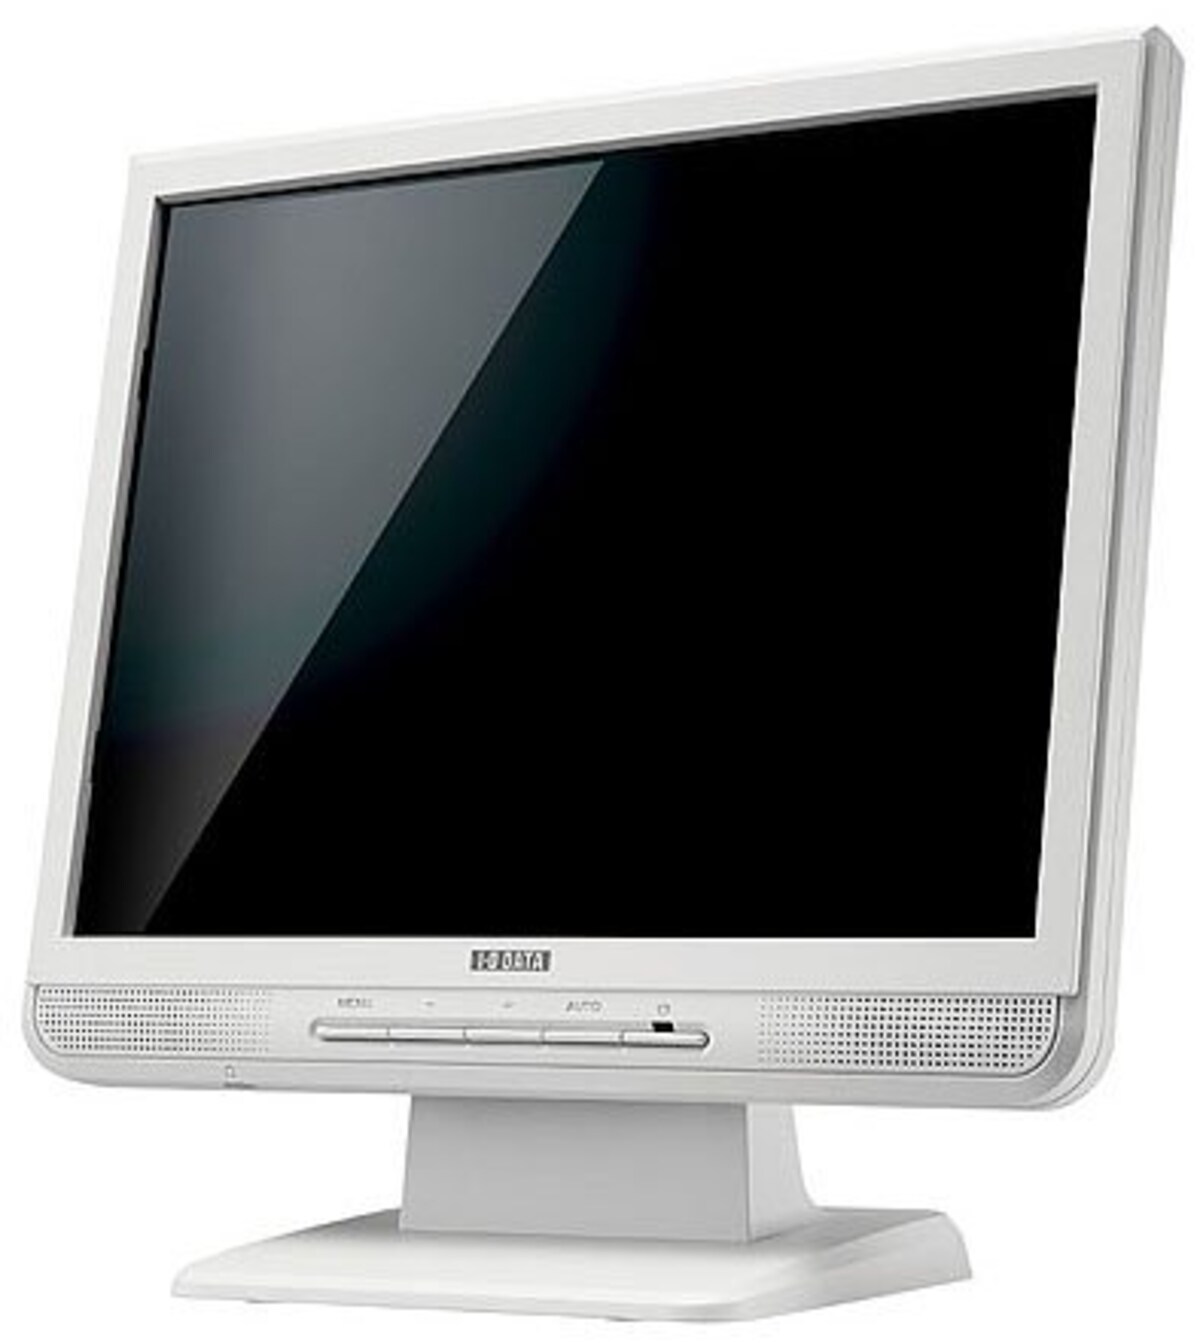 I-O DATA 15インチ液晶ディスプレイ LCD-A154G-P ホワイト (XGA, アナログ, スピーカー内蔵, 保護フィルター内蔵)